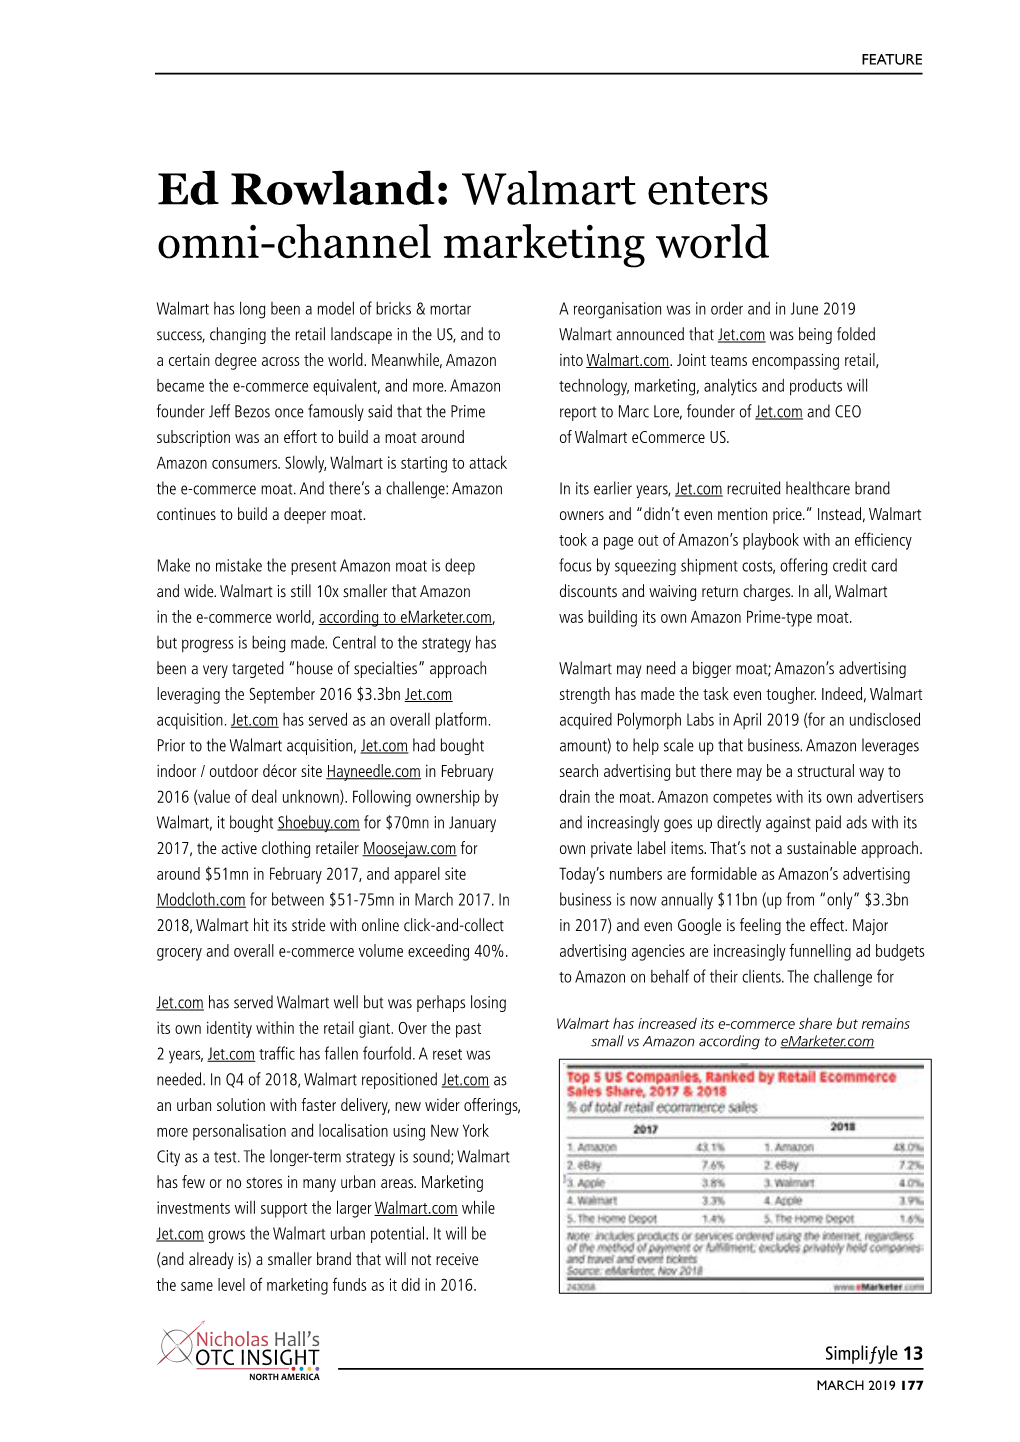 Ed Rowland: Walmart Enters Omni-Channel Marketing World